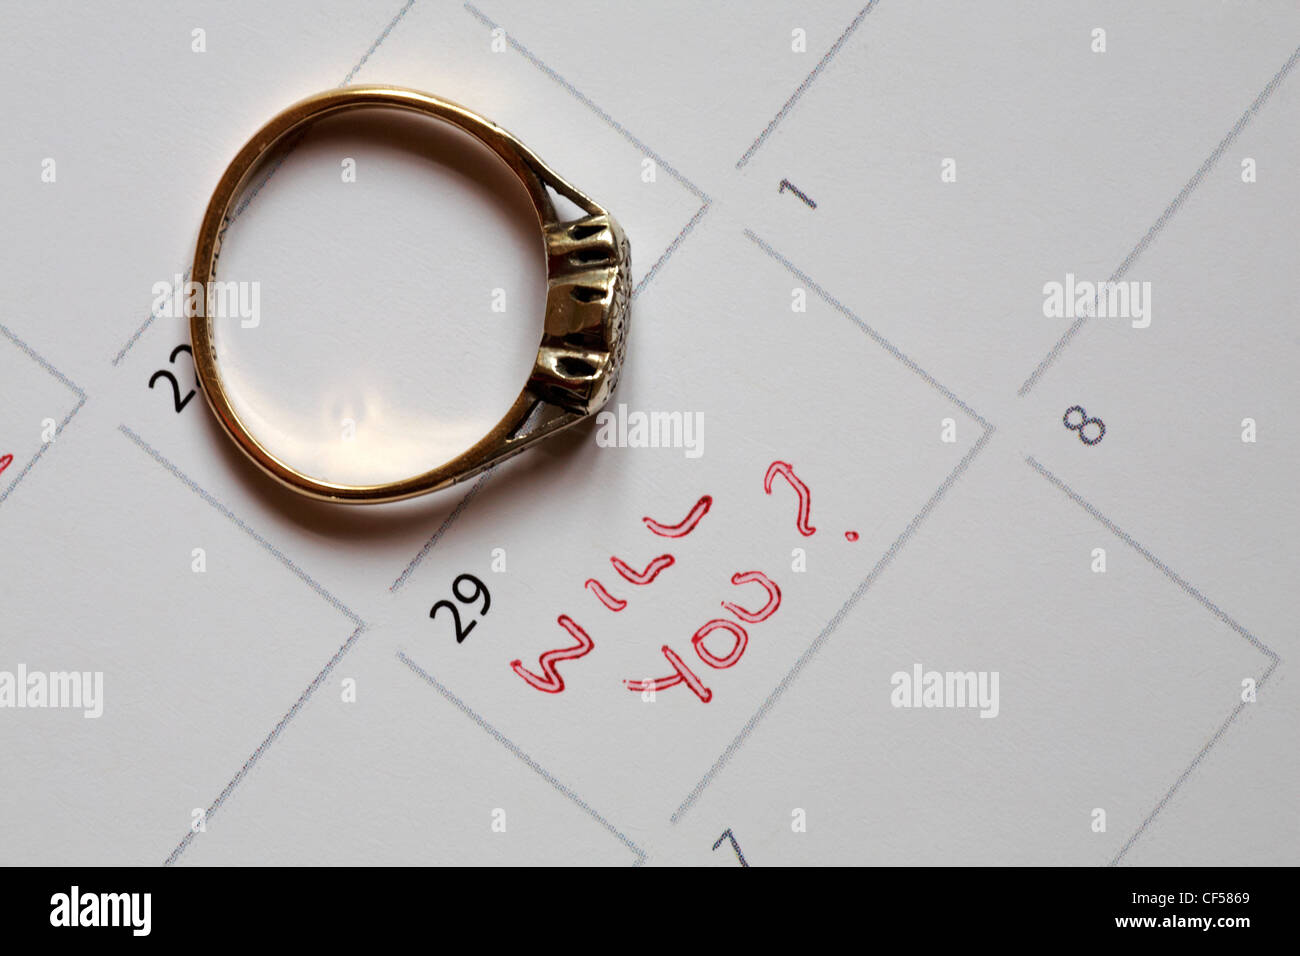 Suoneria di fidanzamento sulla pagina del calendario con messaggio il 29 febbraio anno bisestile, lo farai? - la proposta dell'anno bisestile Foto Stock